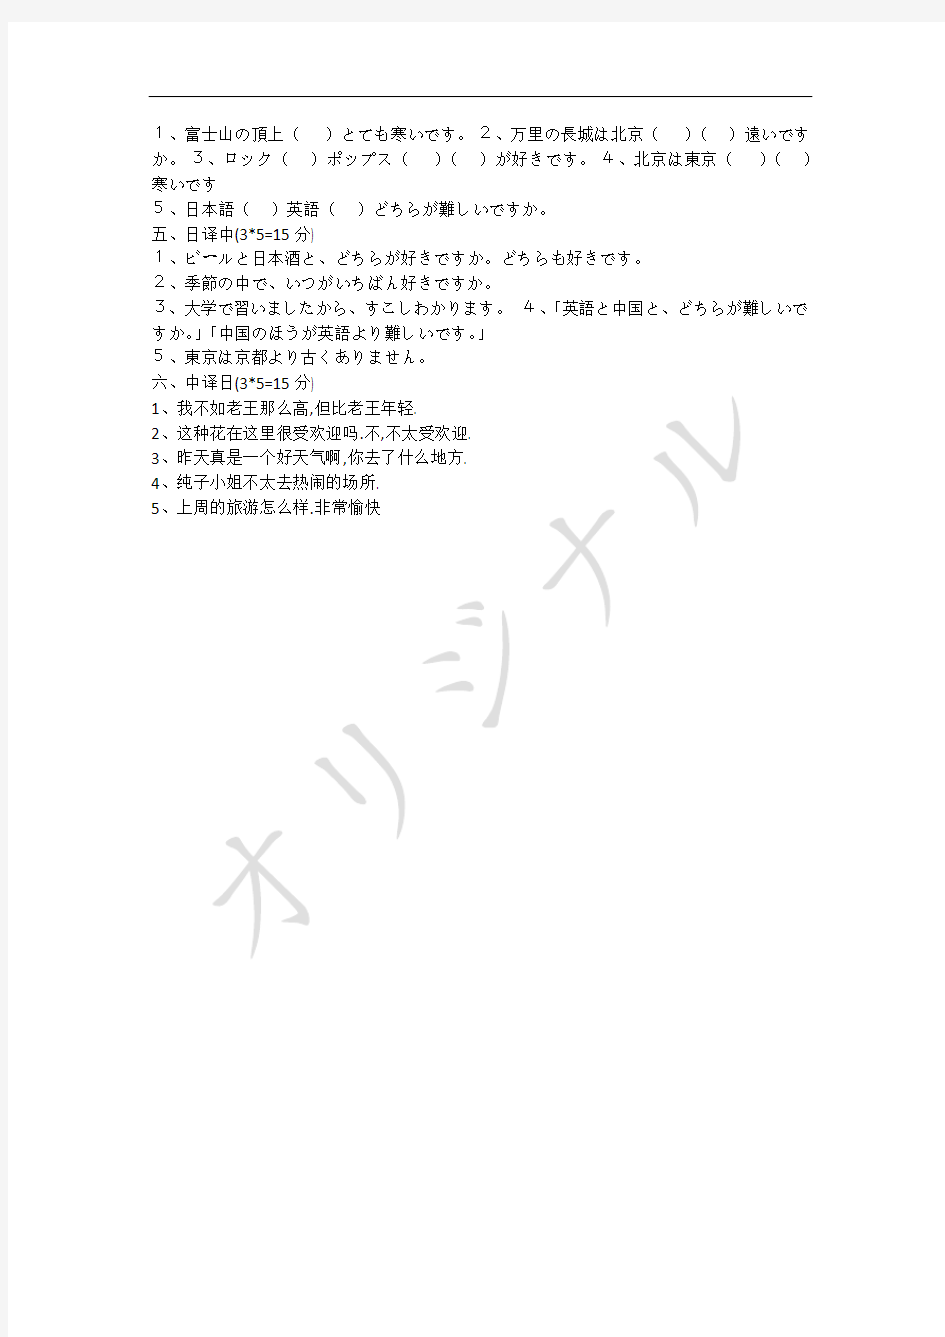 新版中日交流标准日本语初级(上)第三单元